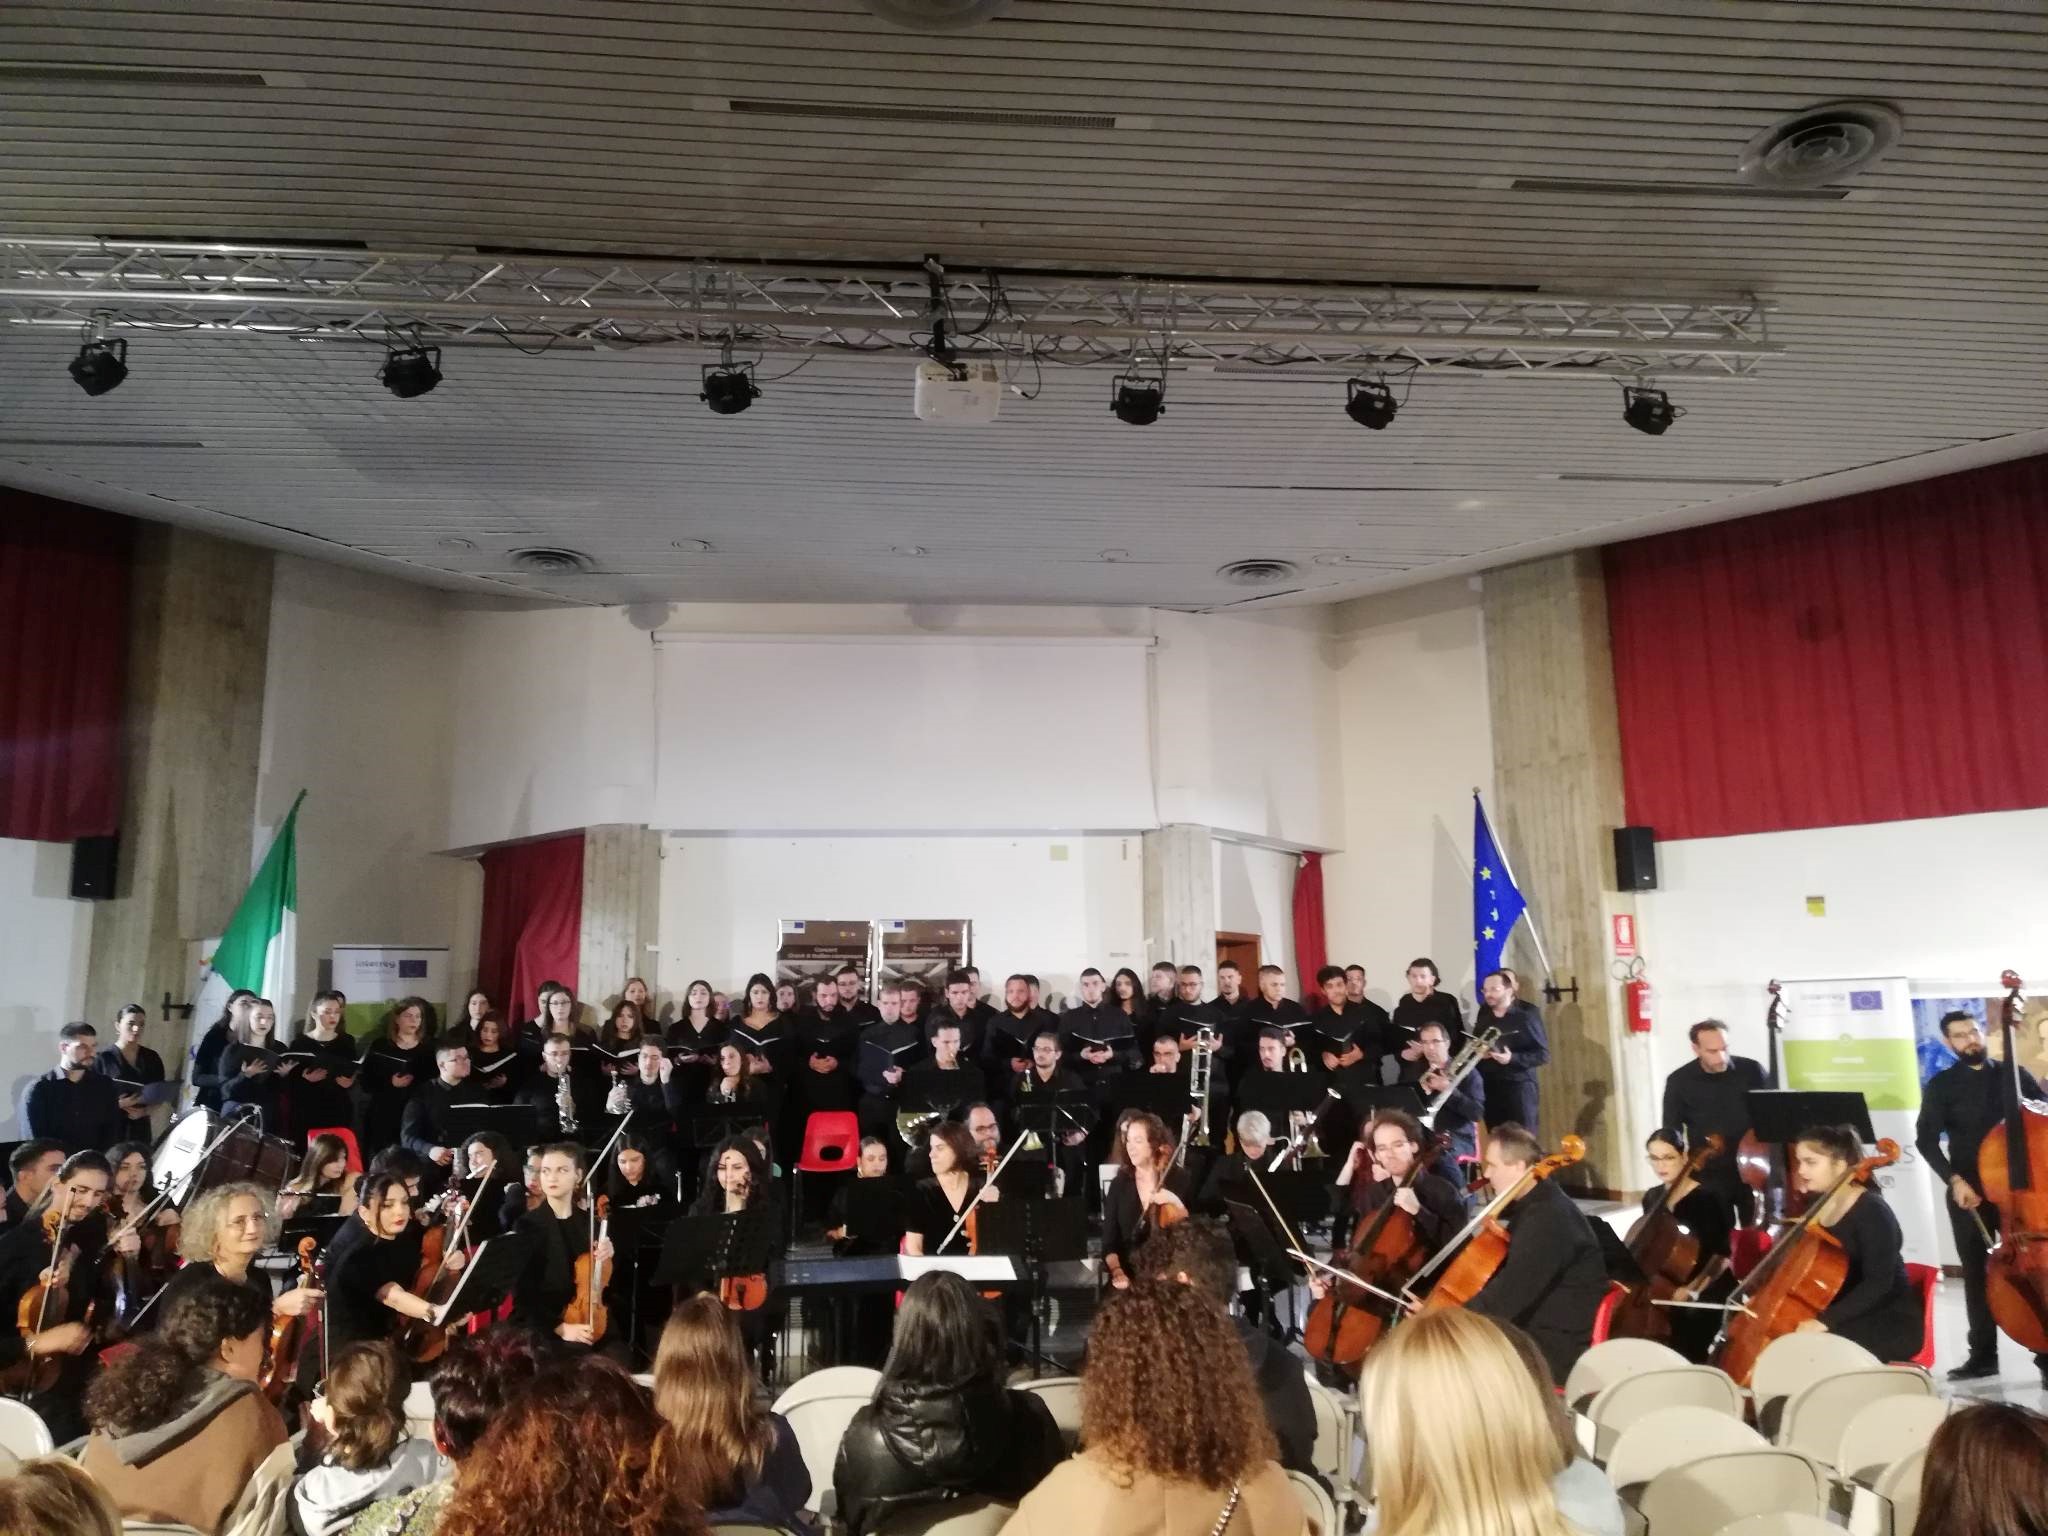 Συναυλία με έργα Ελλήνων και Ιταλών Μουσουργών, στο Fasano της Ιταλίας, με στόχο την ανάδειξη της διαπολιτισμικής διασύνδεσης των δυο περιοχών της Άρτας και της Απουλίας